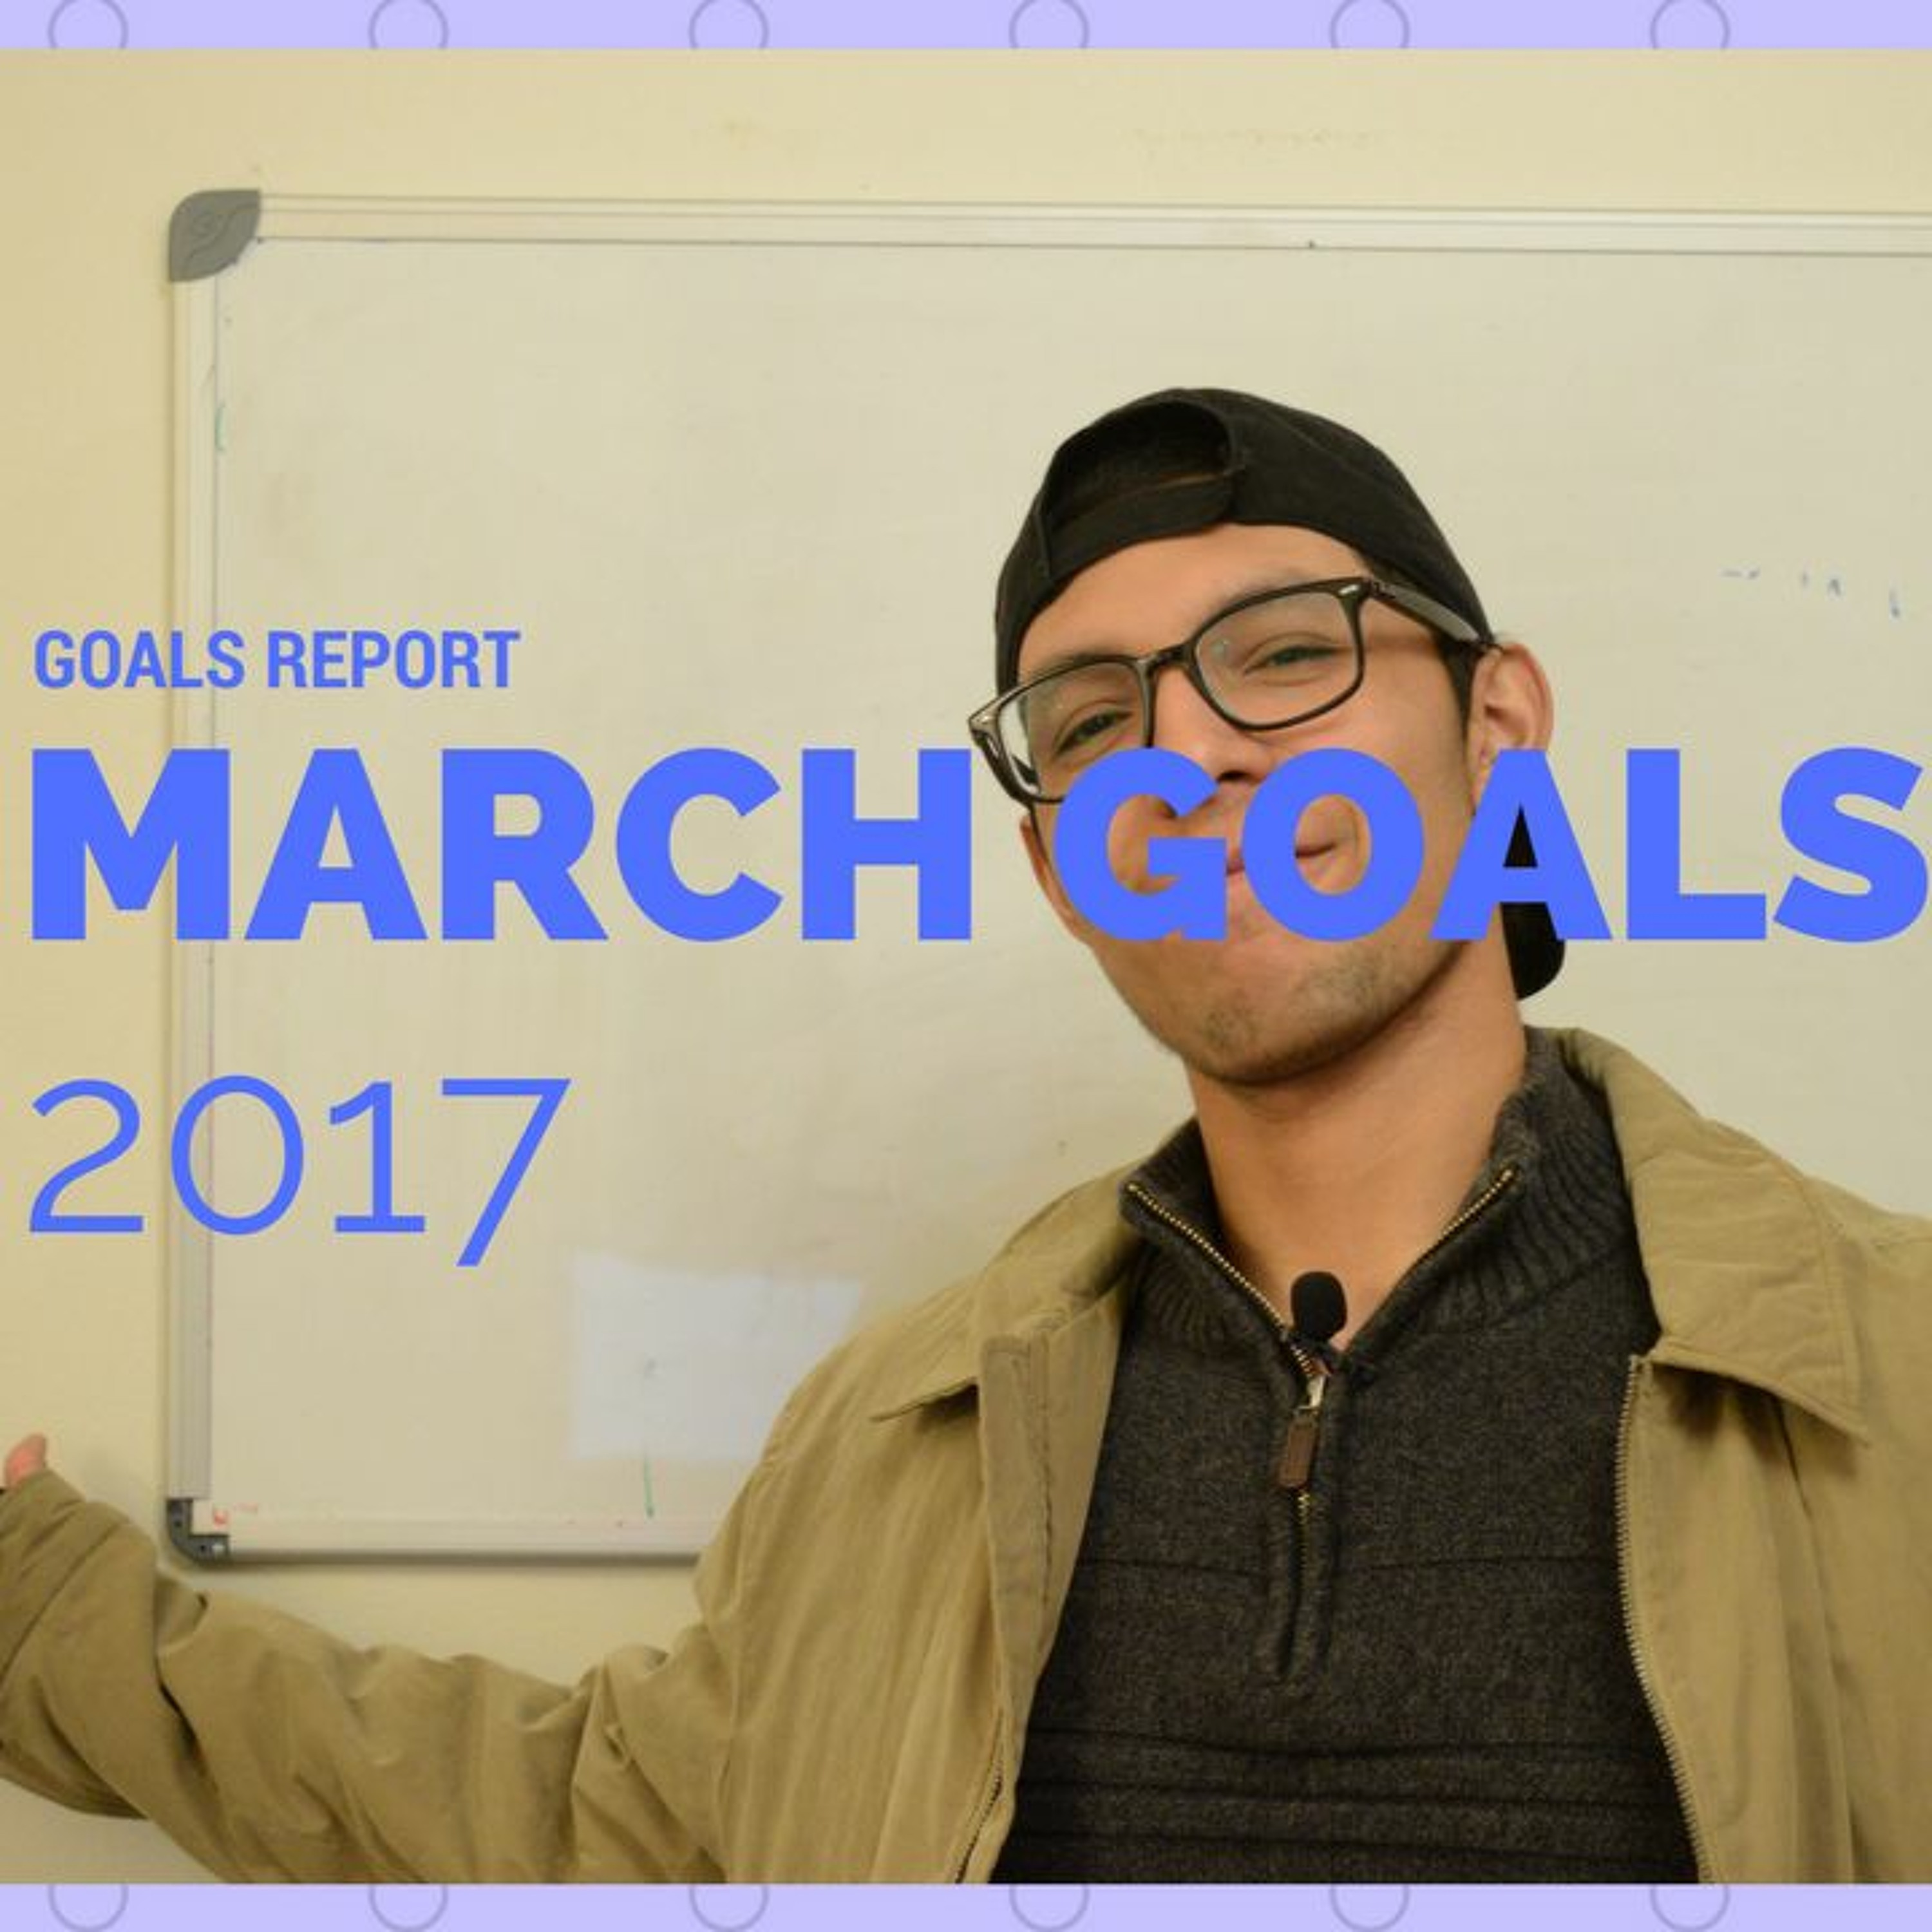 Goals Report - -March Goals- -2017